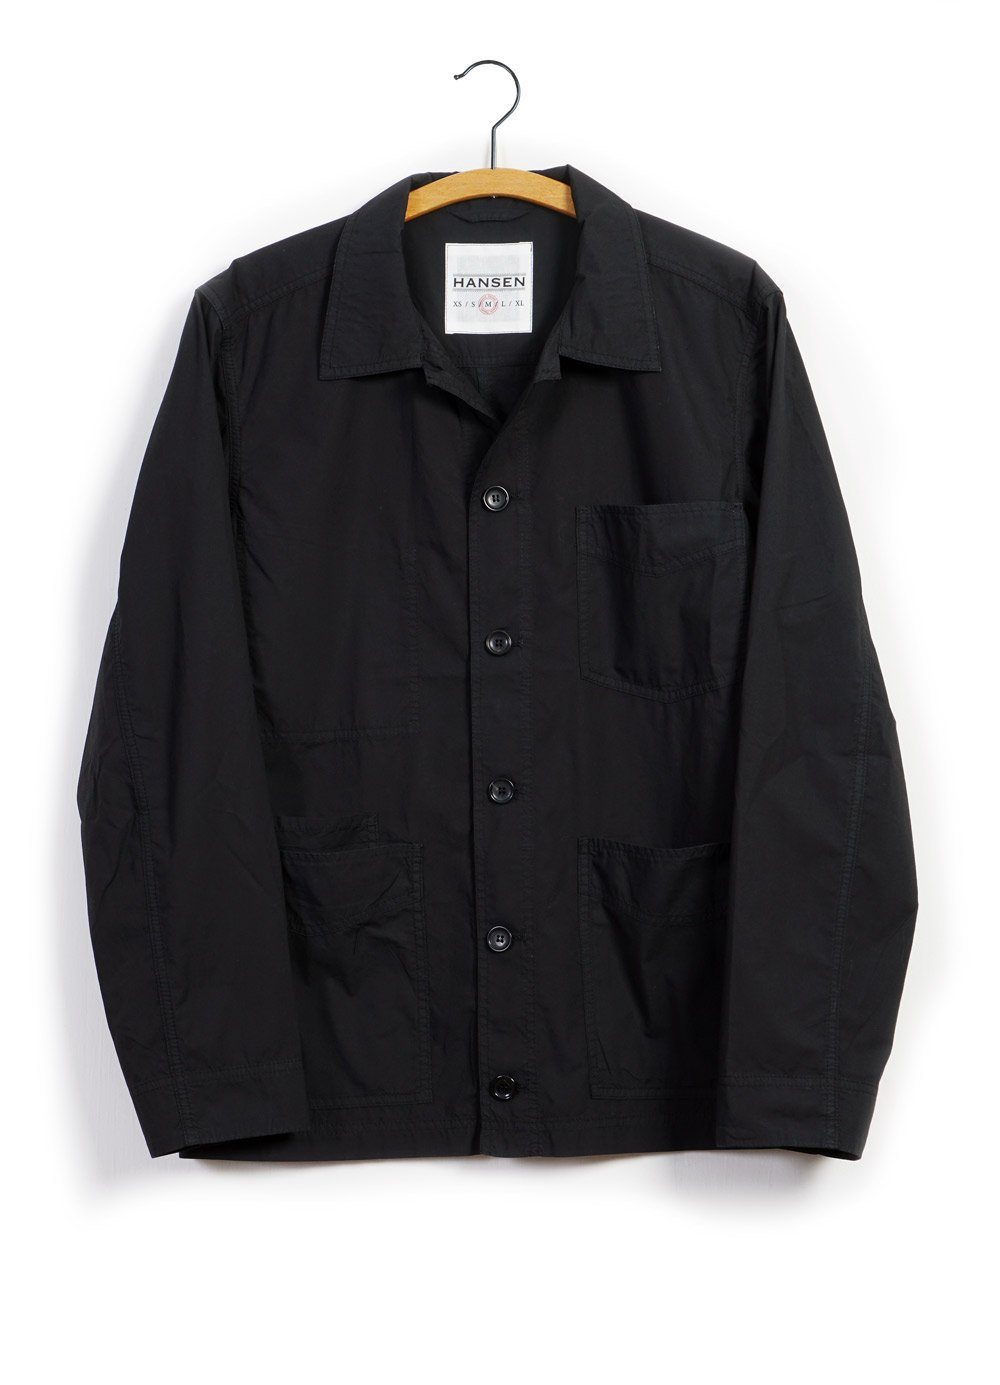 ANDERS | Super Light Summer Jacket | Black | HANSEN Garments